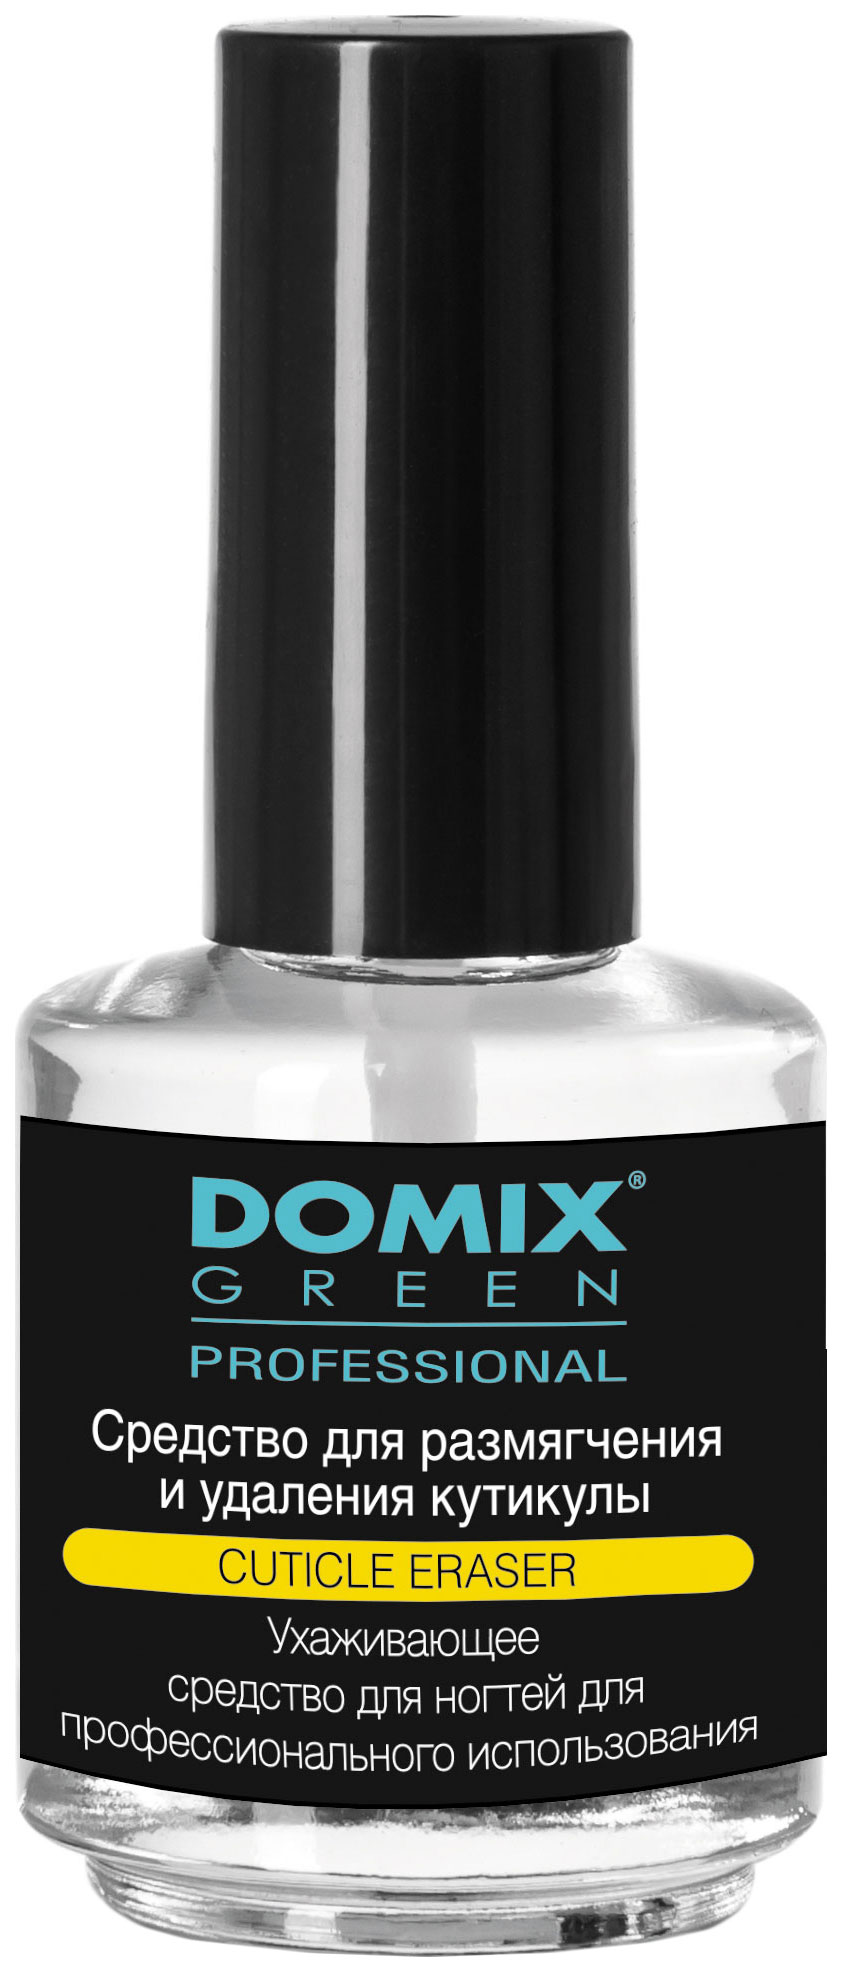 Средство для удаления кутикулы Domix Green Professional Cuticle Eraser 17 мл средство для удаления кутикулы domix cuticle remover 200 мл